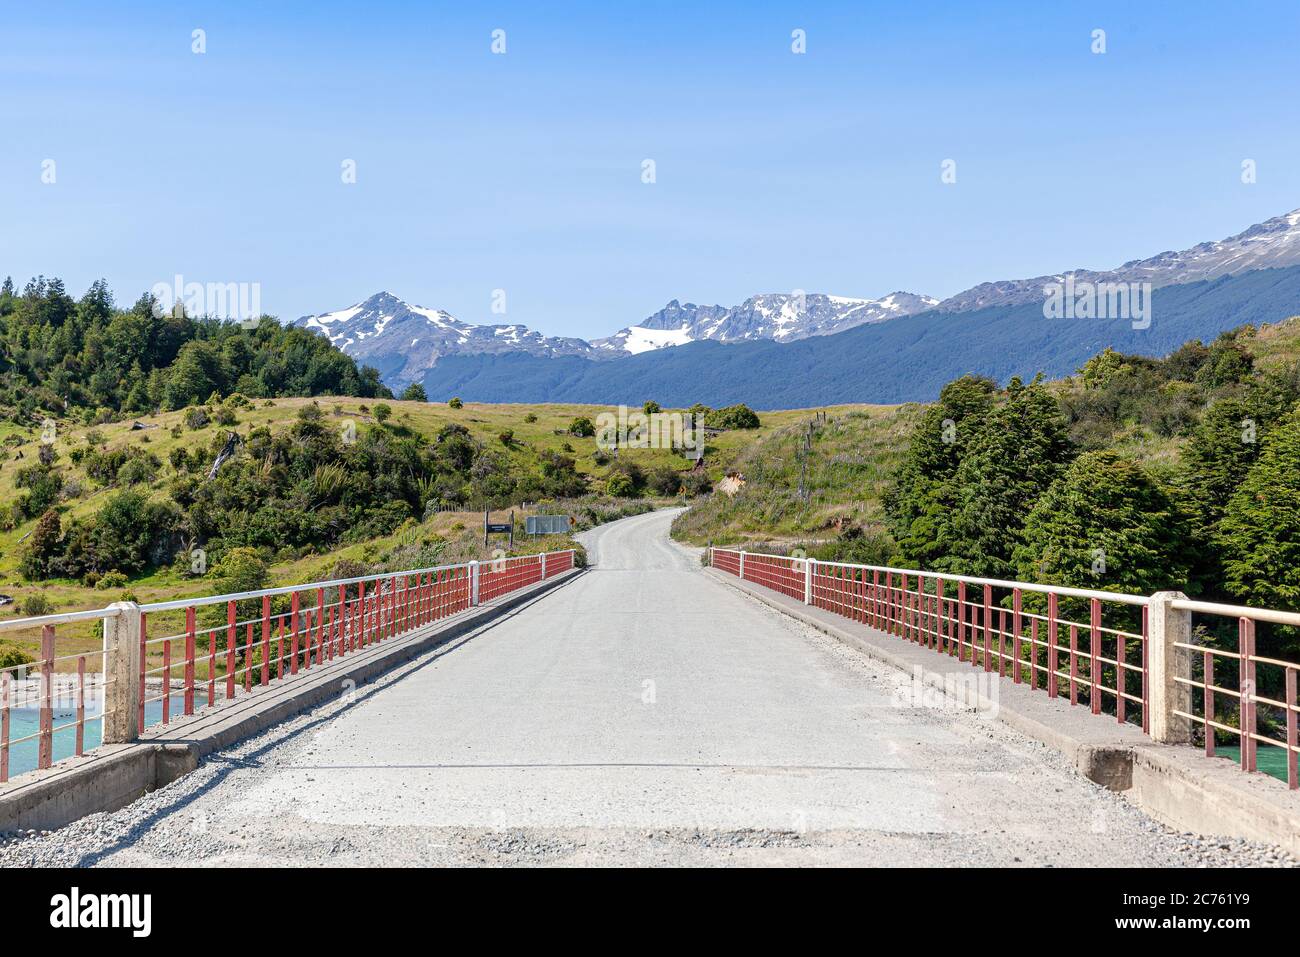 Bridge over El Engaño River, Carretera Austral - Chile Chico, Aysén, Chile Stock Photo